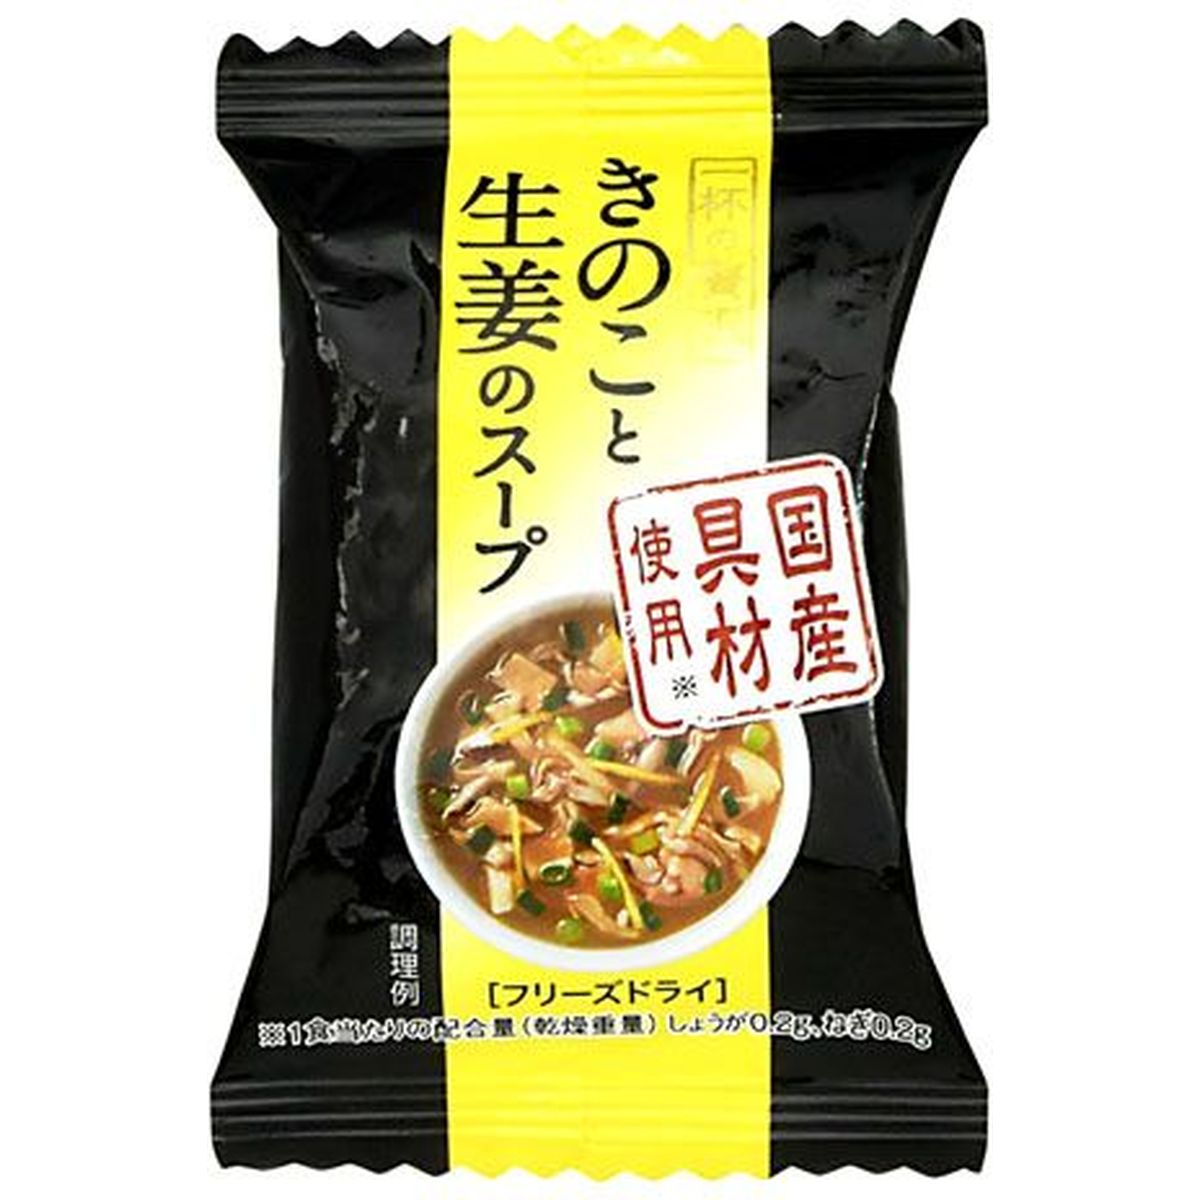 【10個入リ】MCFS 一杯ノ贅沢キノコト生姜ノスープ 5.4g